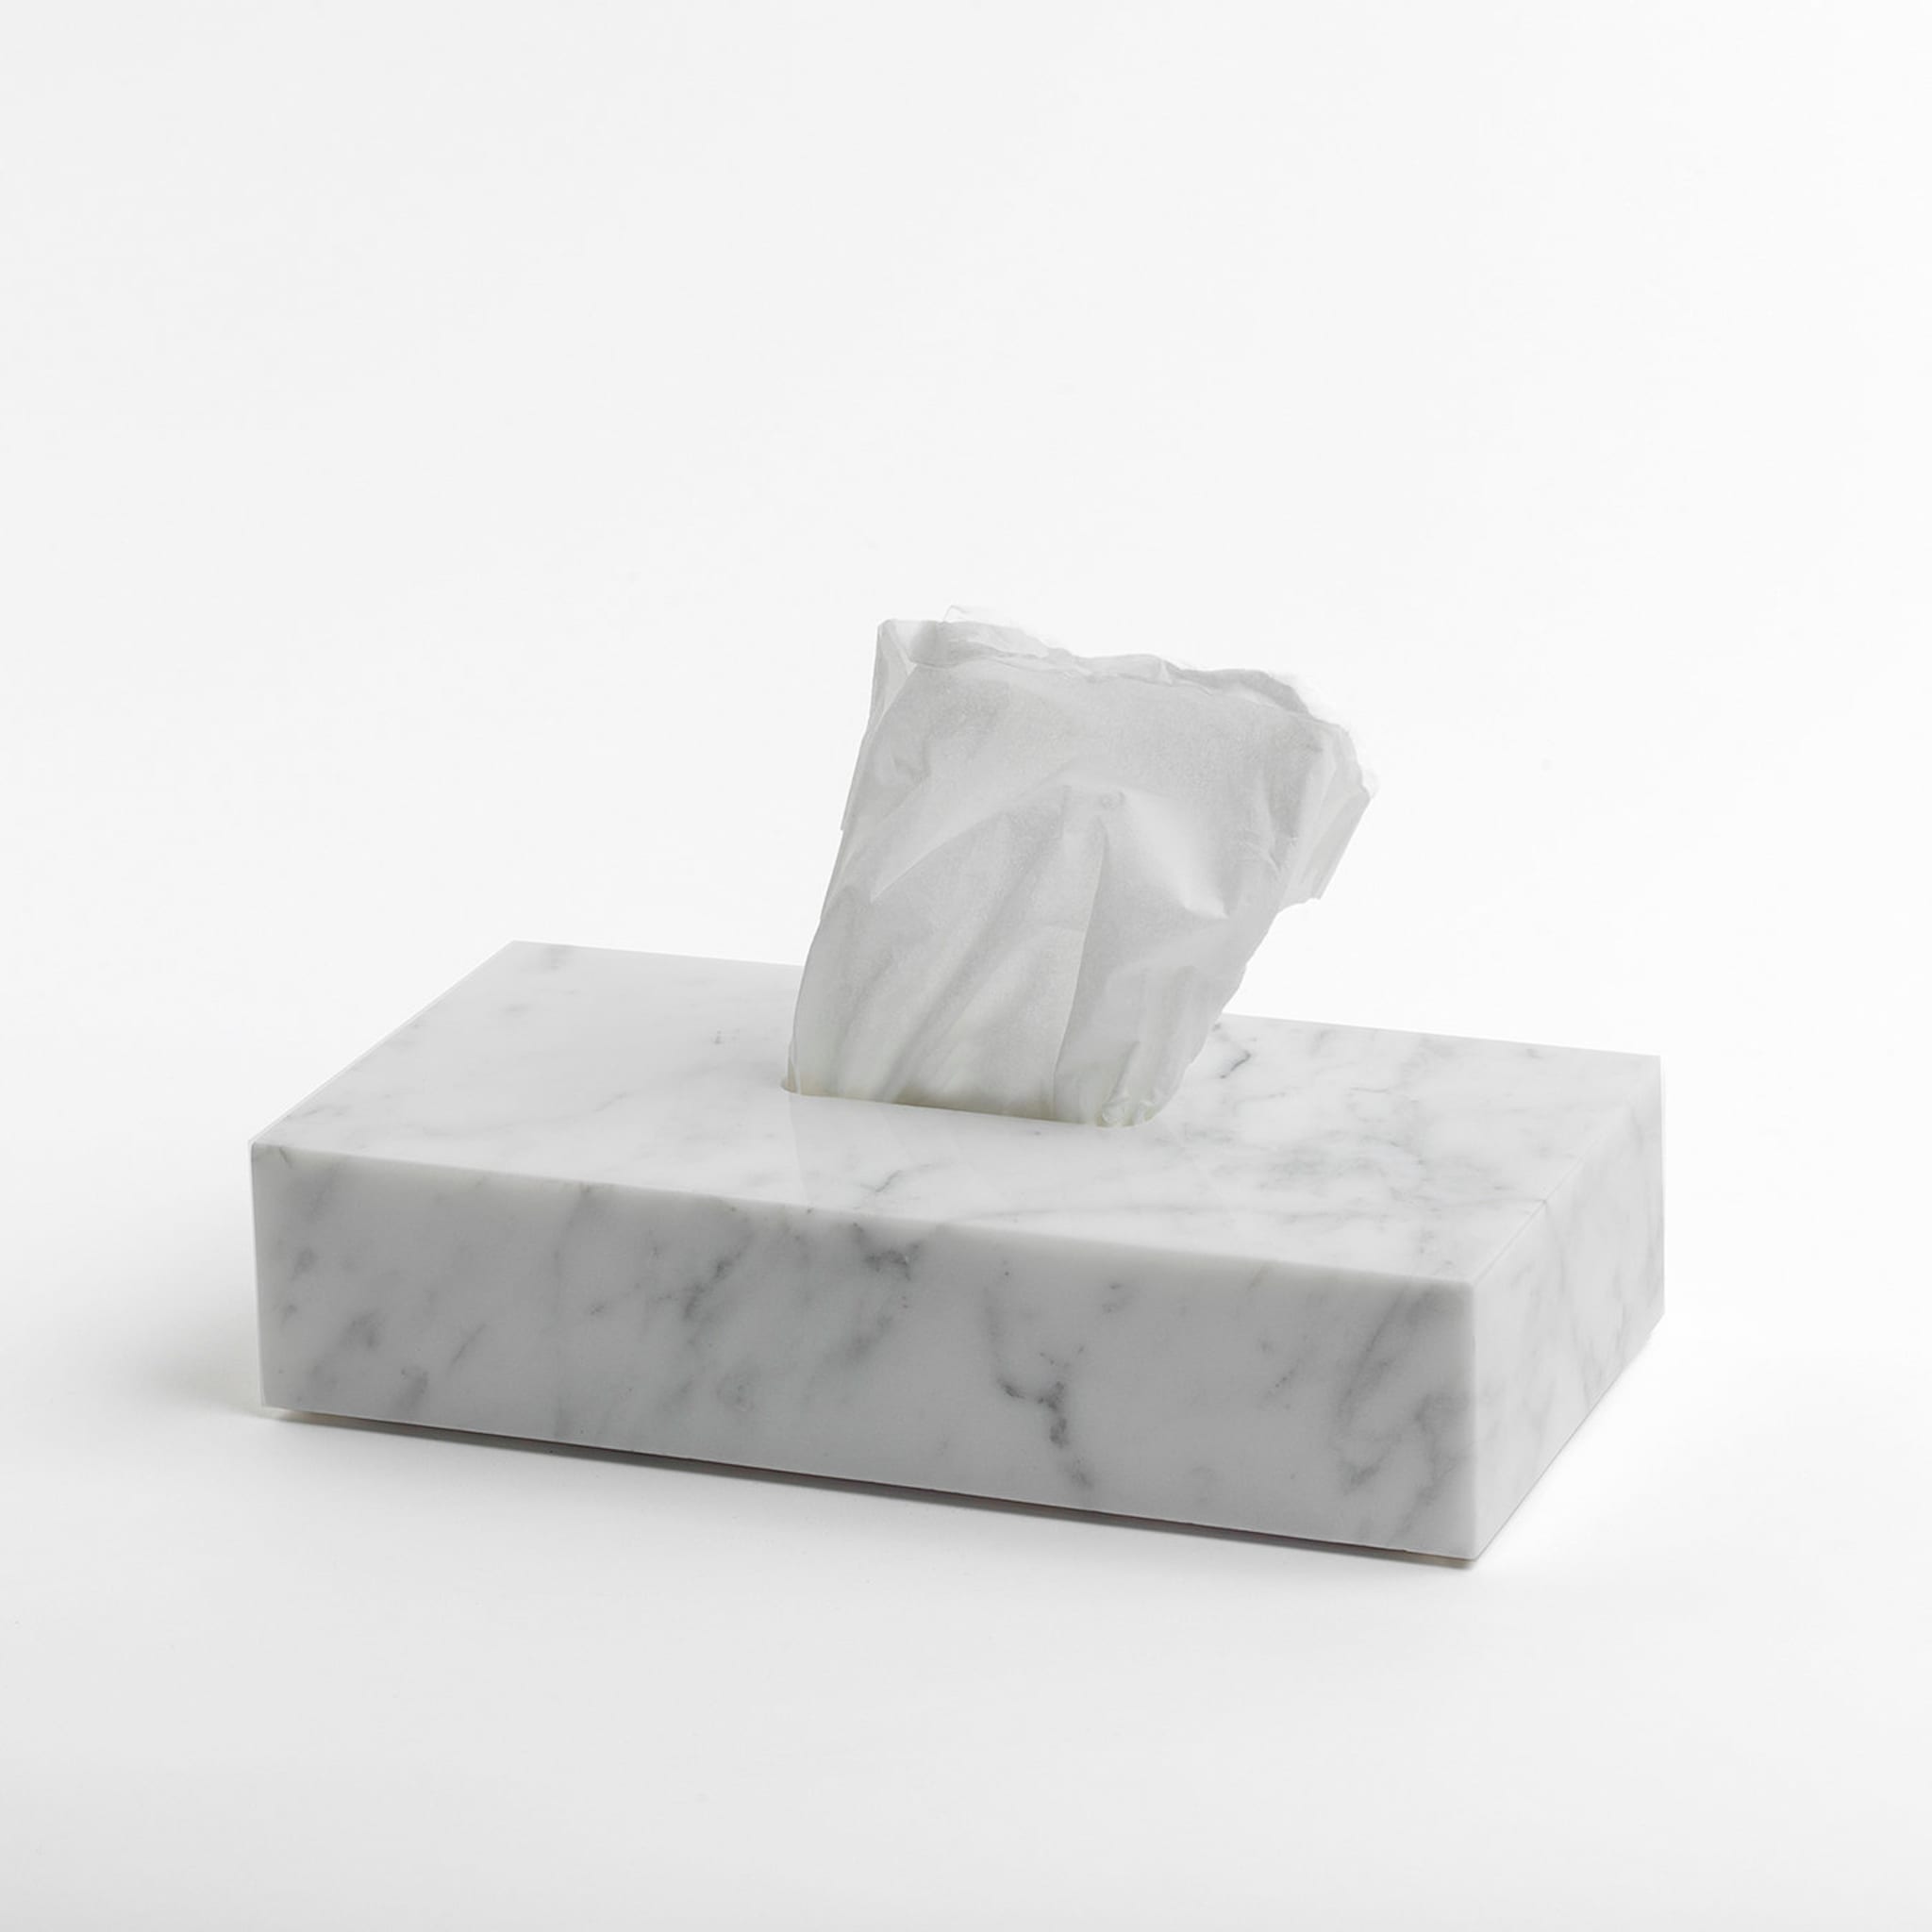 Weißer Marmor Tissue Box - Alternative Ansicht 1